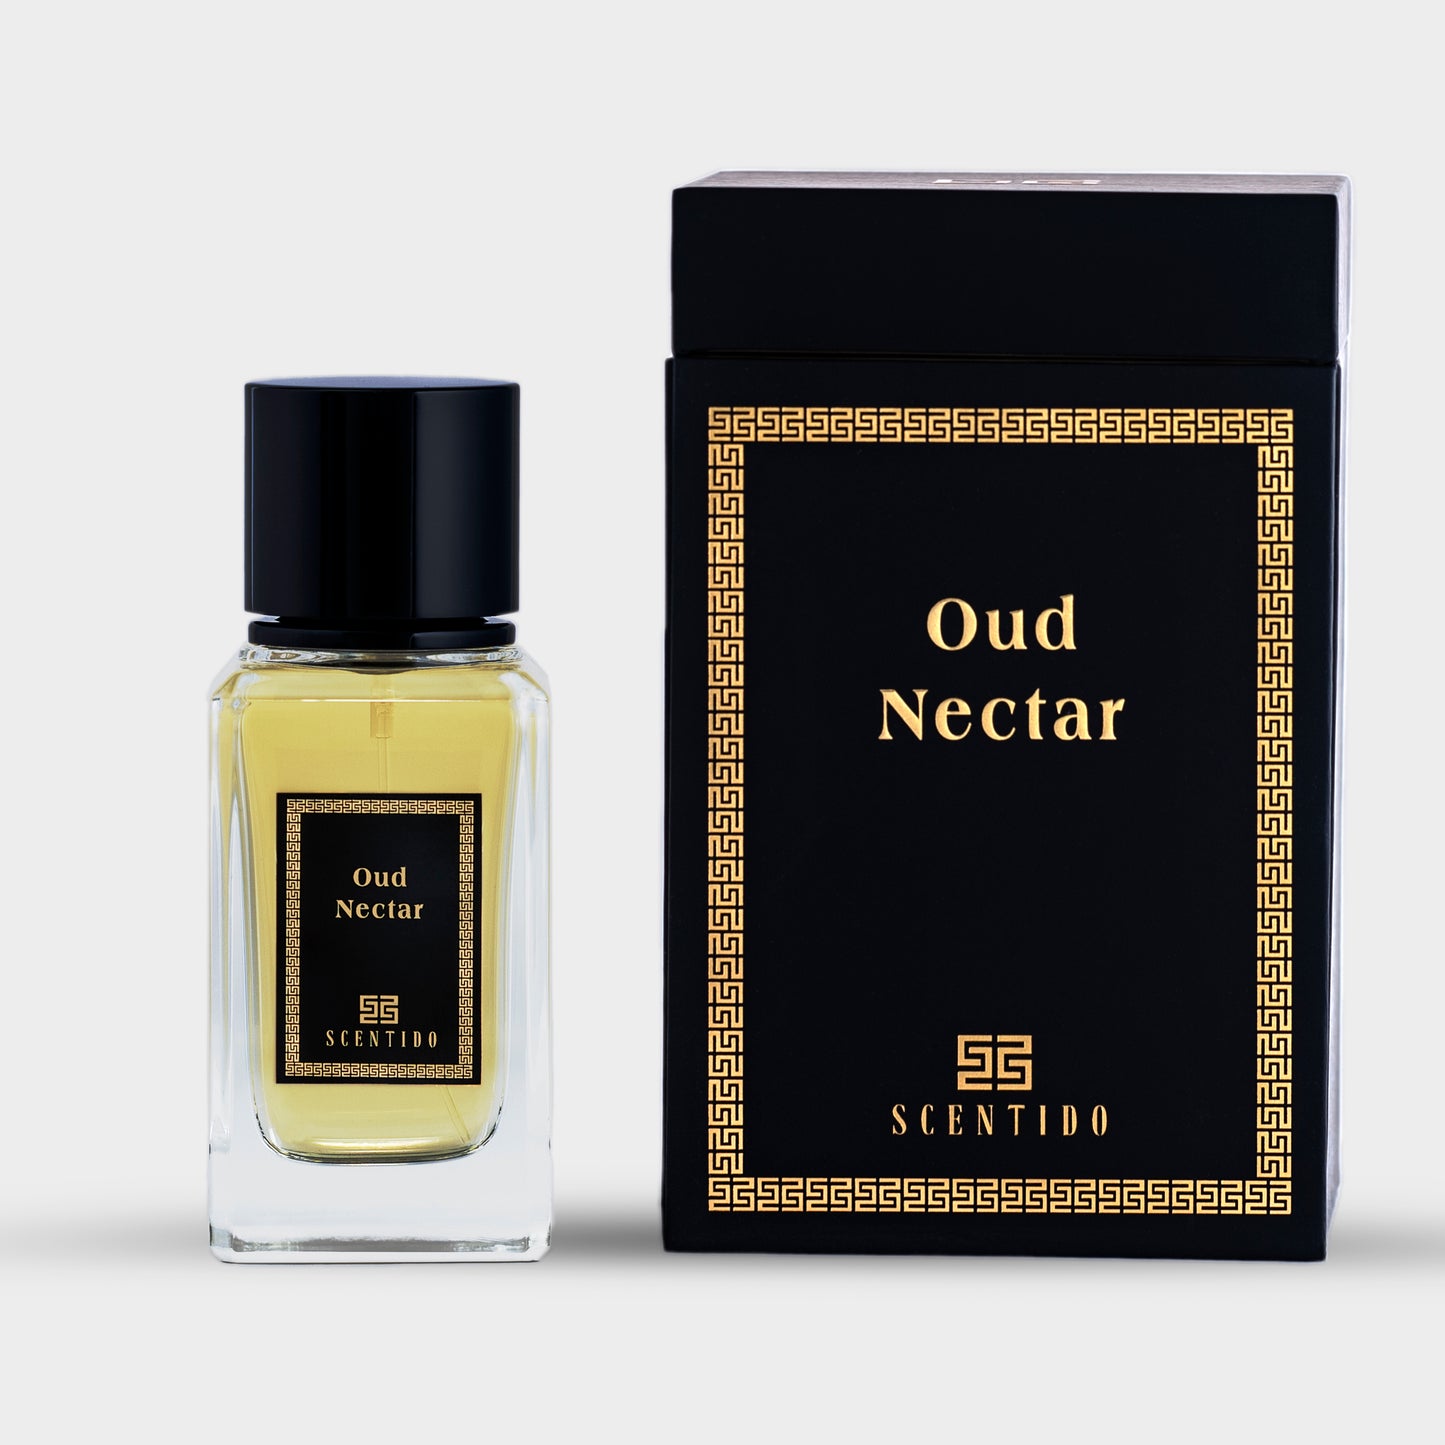 Oud Nectar